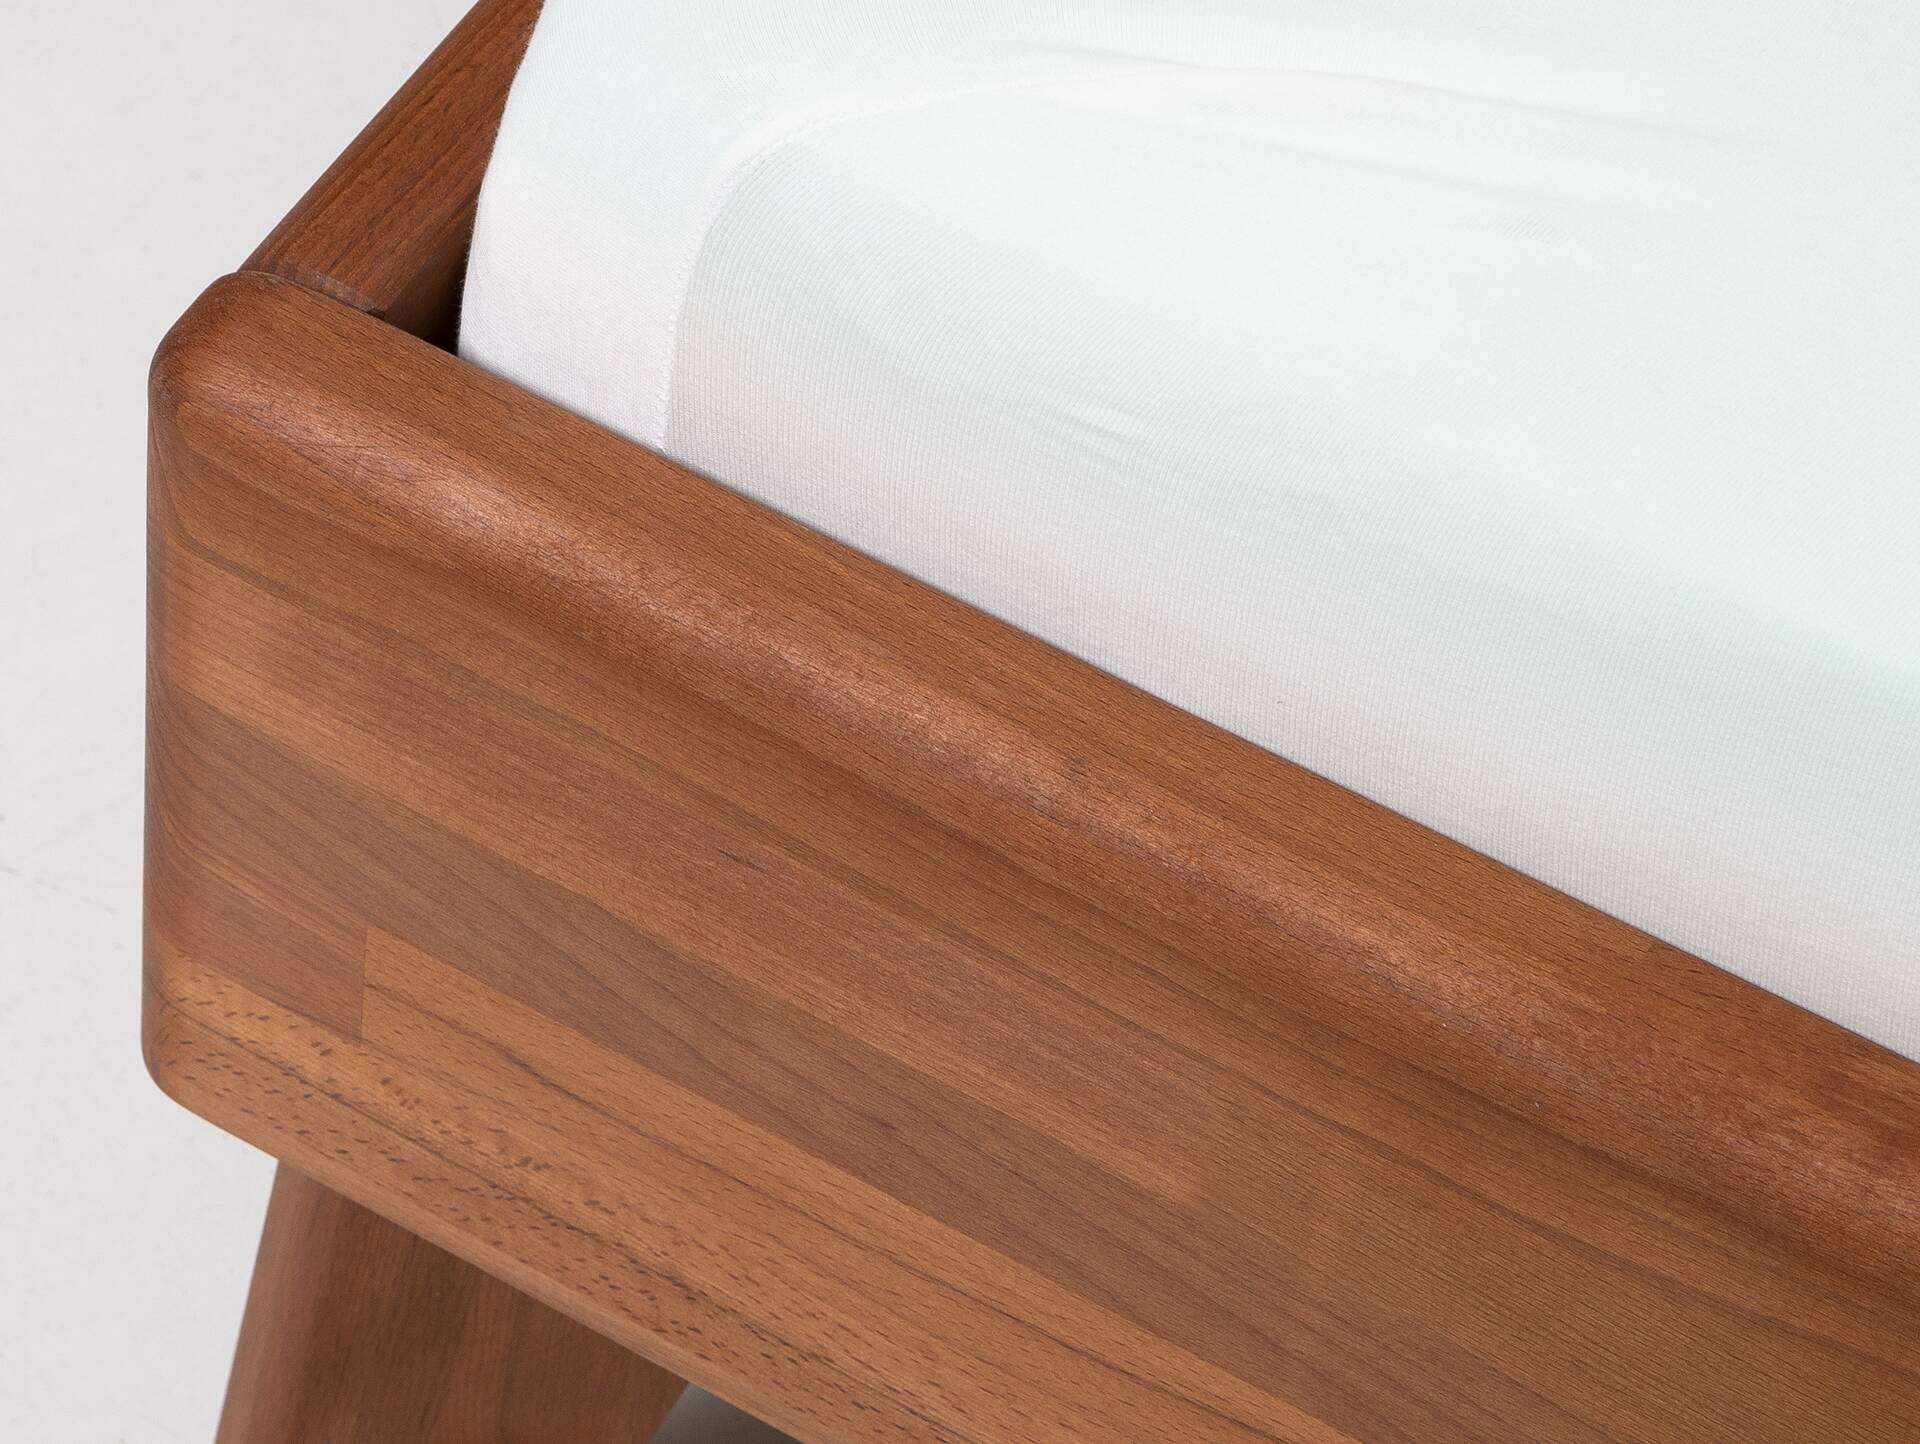 CALIDO 4-Fuß-Bett mit Polster-Kopfteil, Material Massivholz 160 x 200 cm | Buche nussbaumfarbig gedämpft | Stoff Braun | Standardhöhe